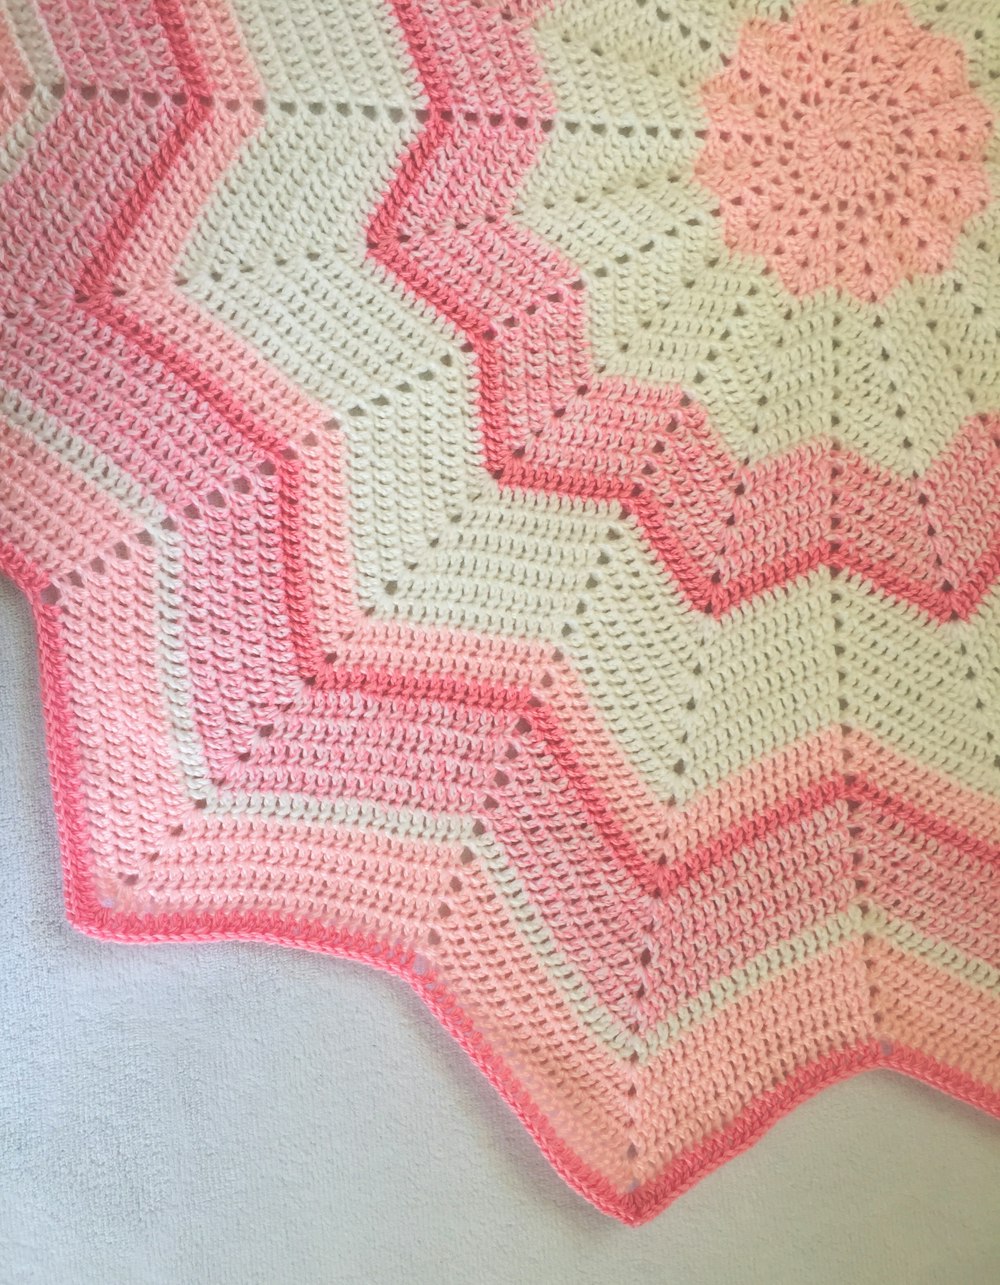 ベッドの上のピンクと白のかぎ針編みの毛布